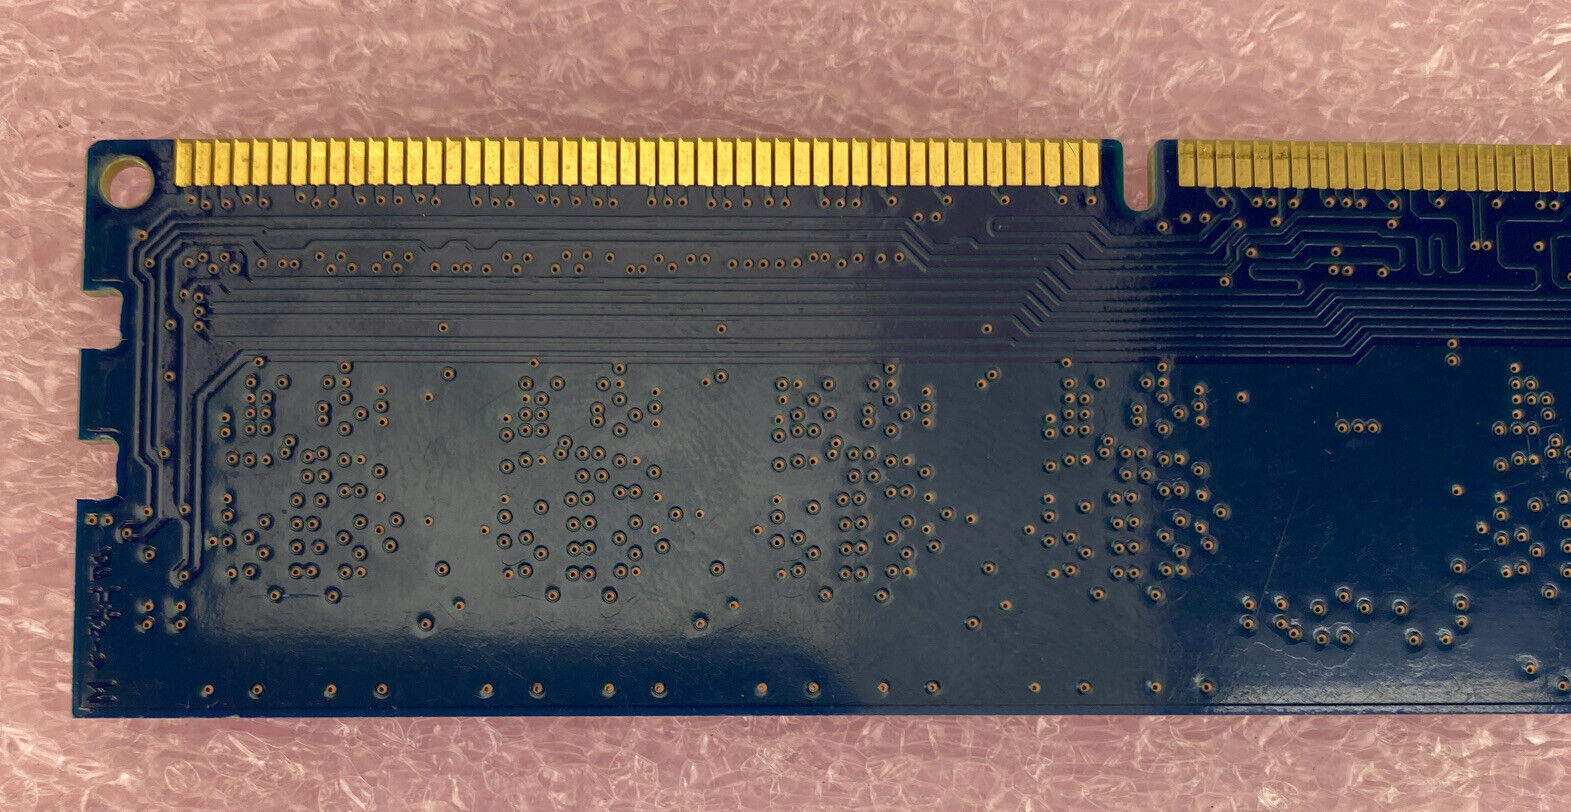 2GB Nanya NT2GC64B88B0NF-CG PC3-10600 1333 MHz 1Rx8 DIMM DDR3 RAM